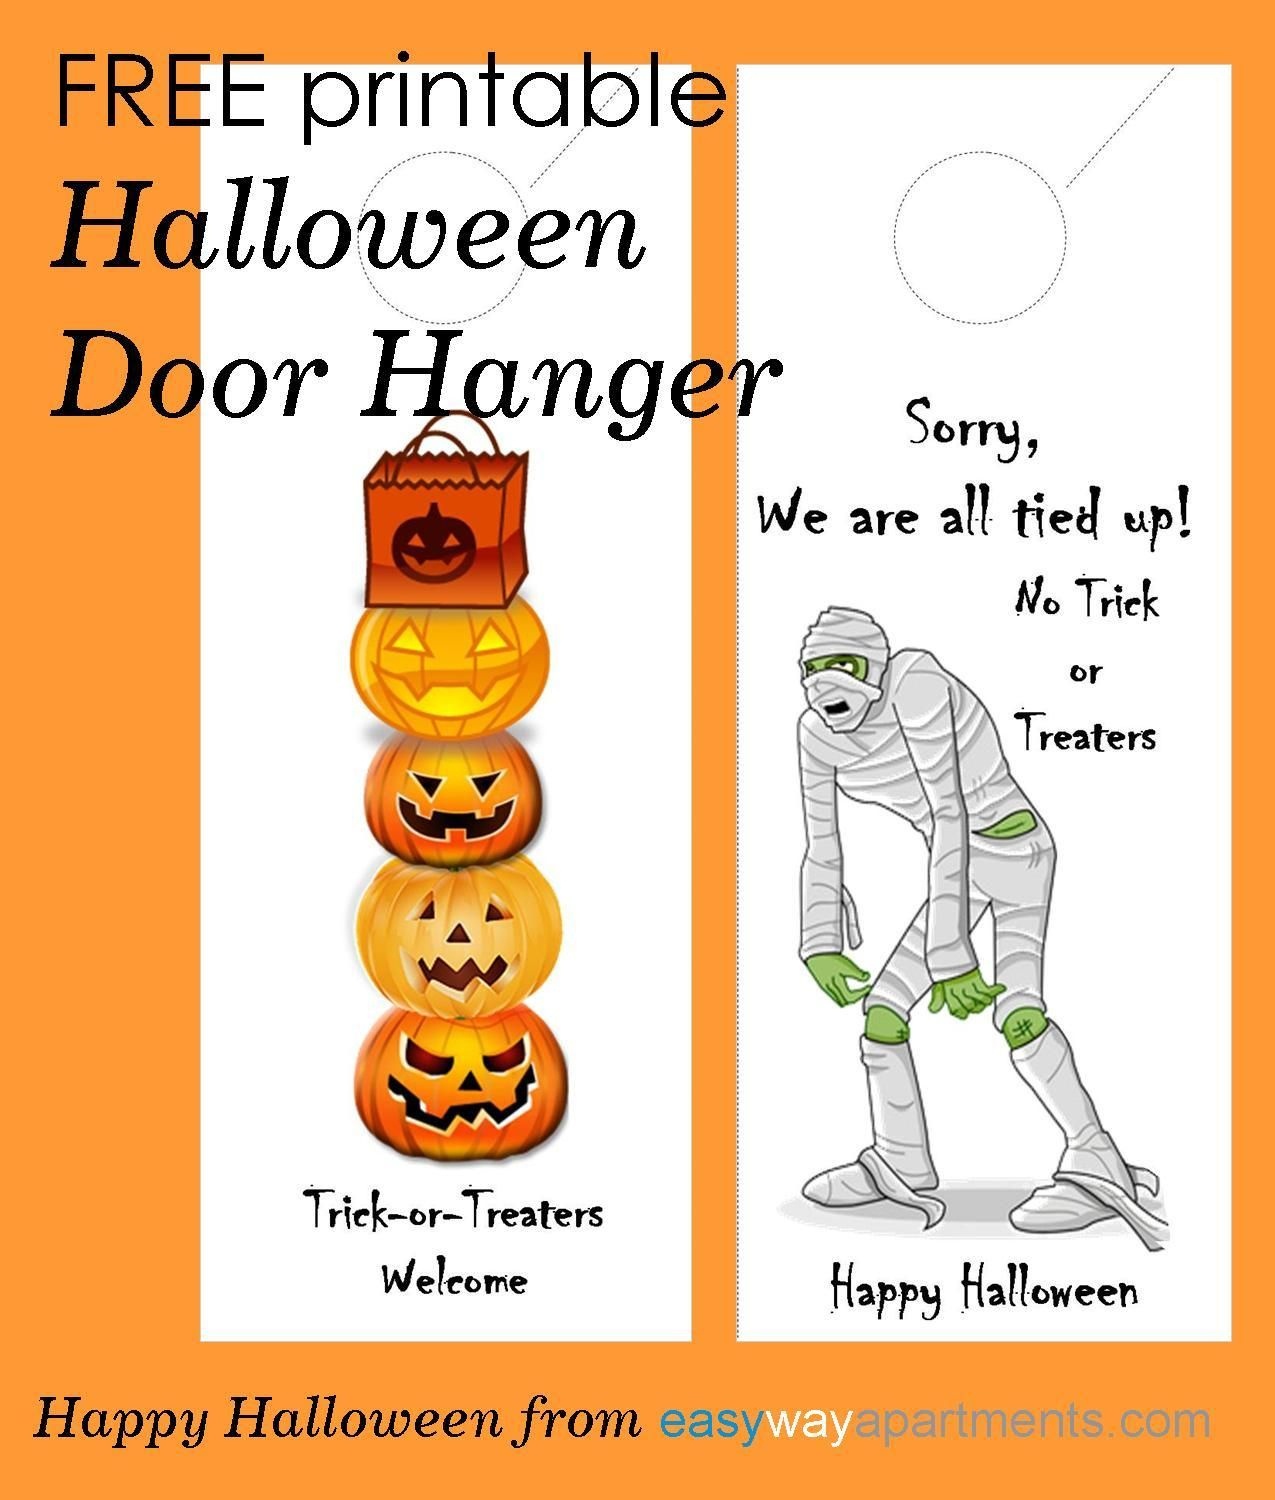 Blank Door Hanger Template For Your Design, Print And Cutout Halloween Door Hangers Free